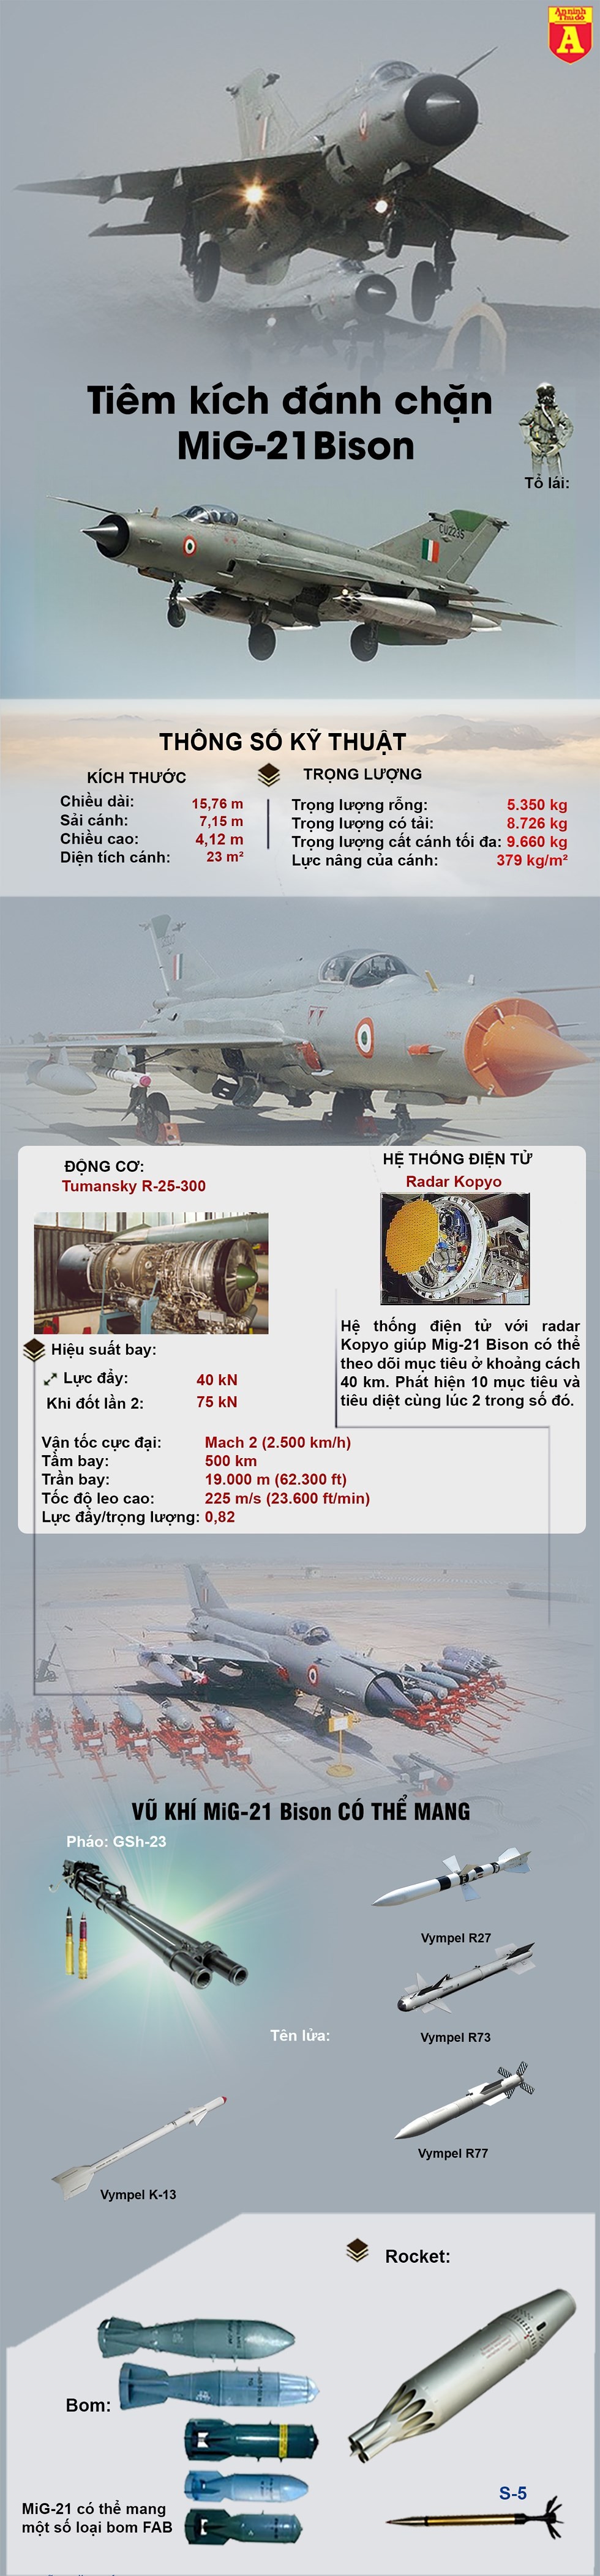 [Info] Tiết lộ sốc: MiG-21 Bison Ấn Độ không thần thánh và đã thất bại khi bắn hạ F-16 Pakistan ảnh 3